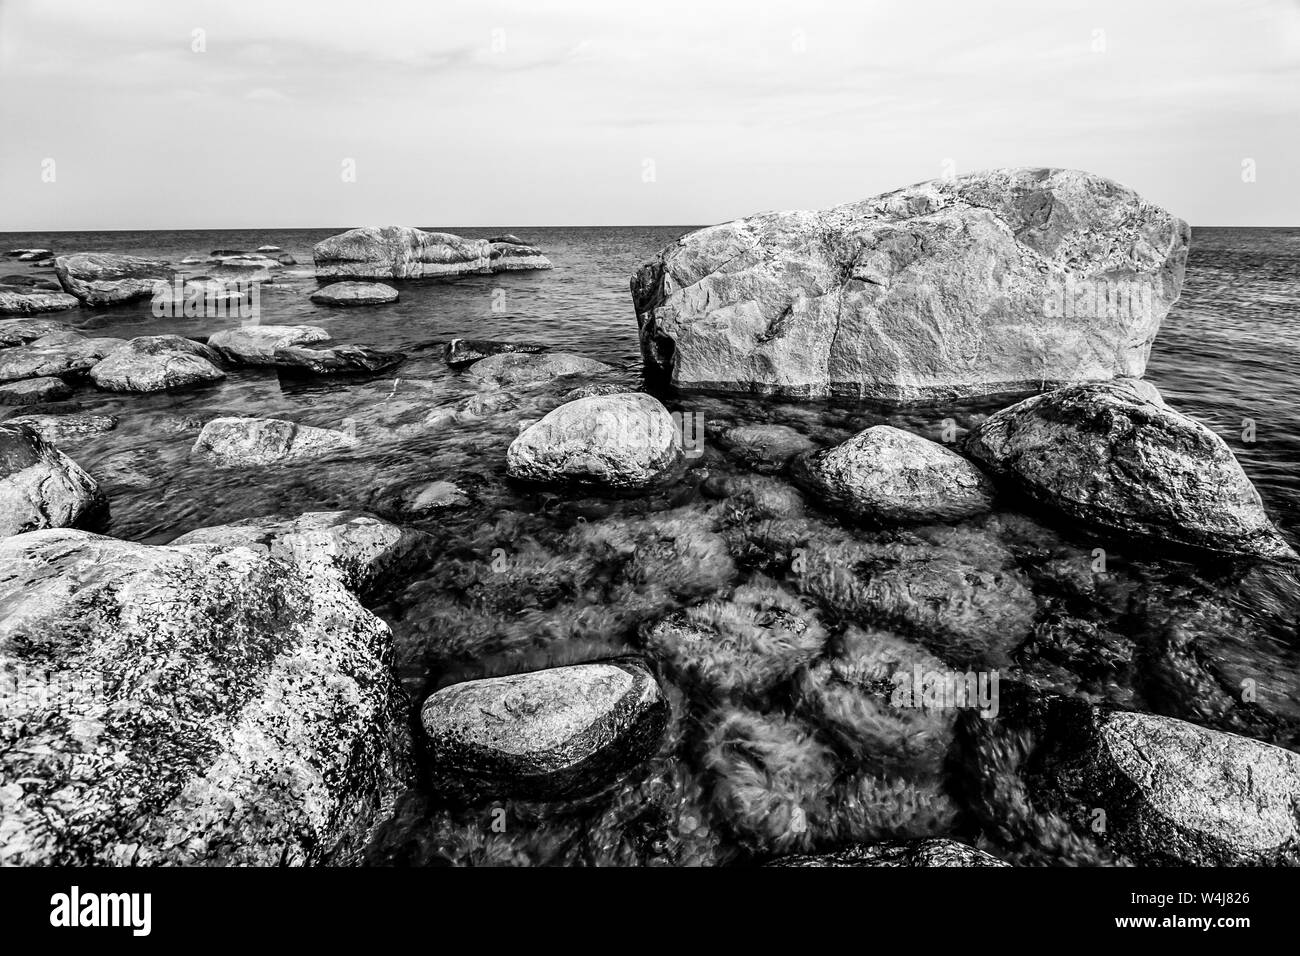 Hermosa enormes piedras en el mar con pequeñas piedras bajo el agua cubiertos de algas verdes en el Golfo de Finlandia. En blanco y negro. Foto de stock